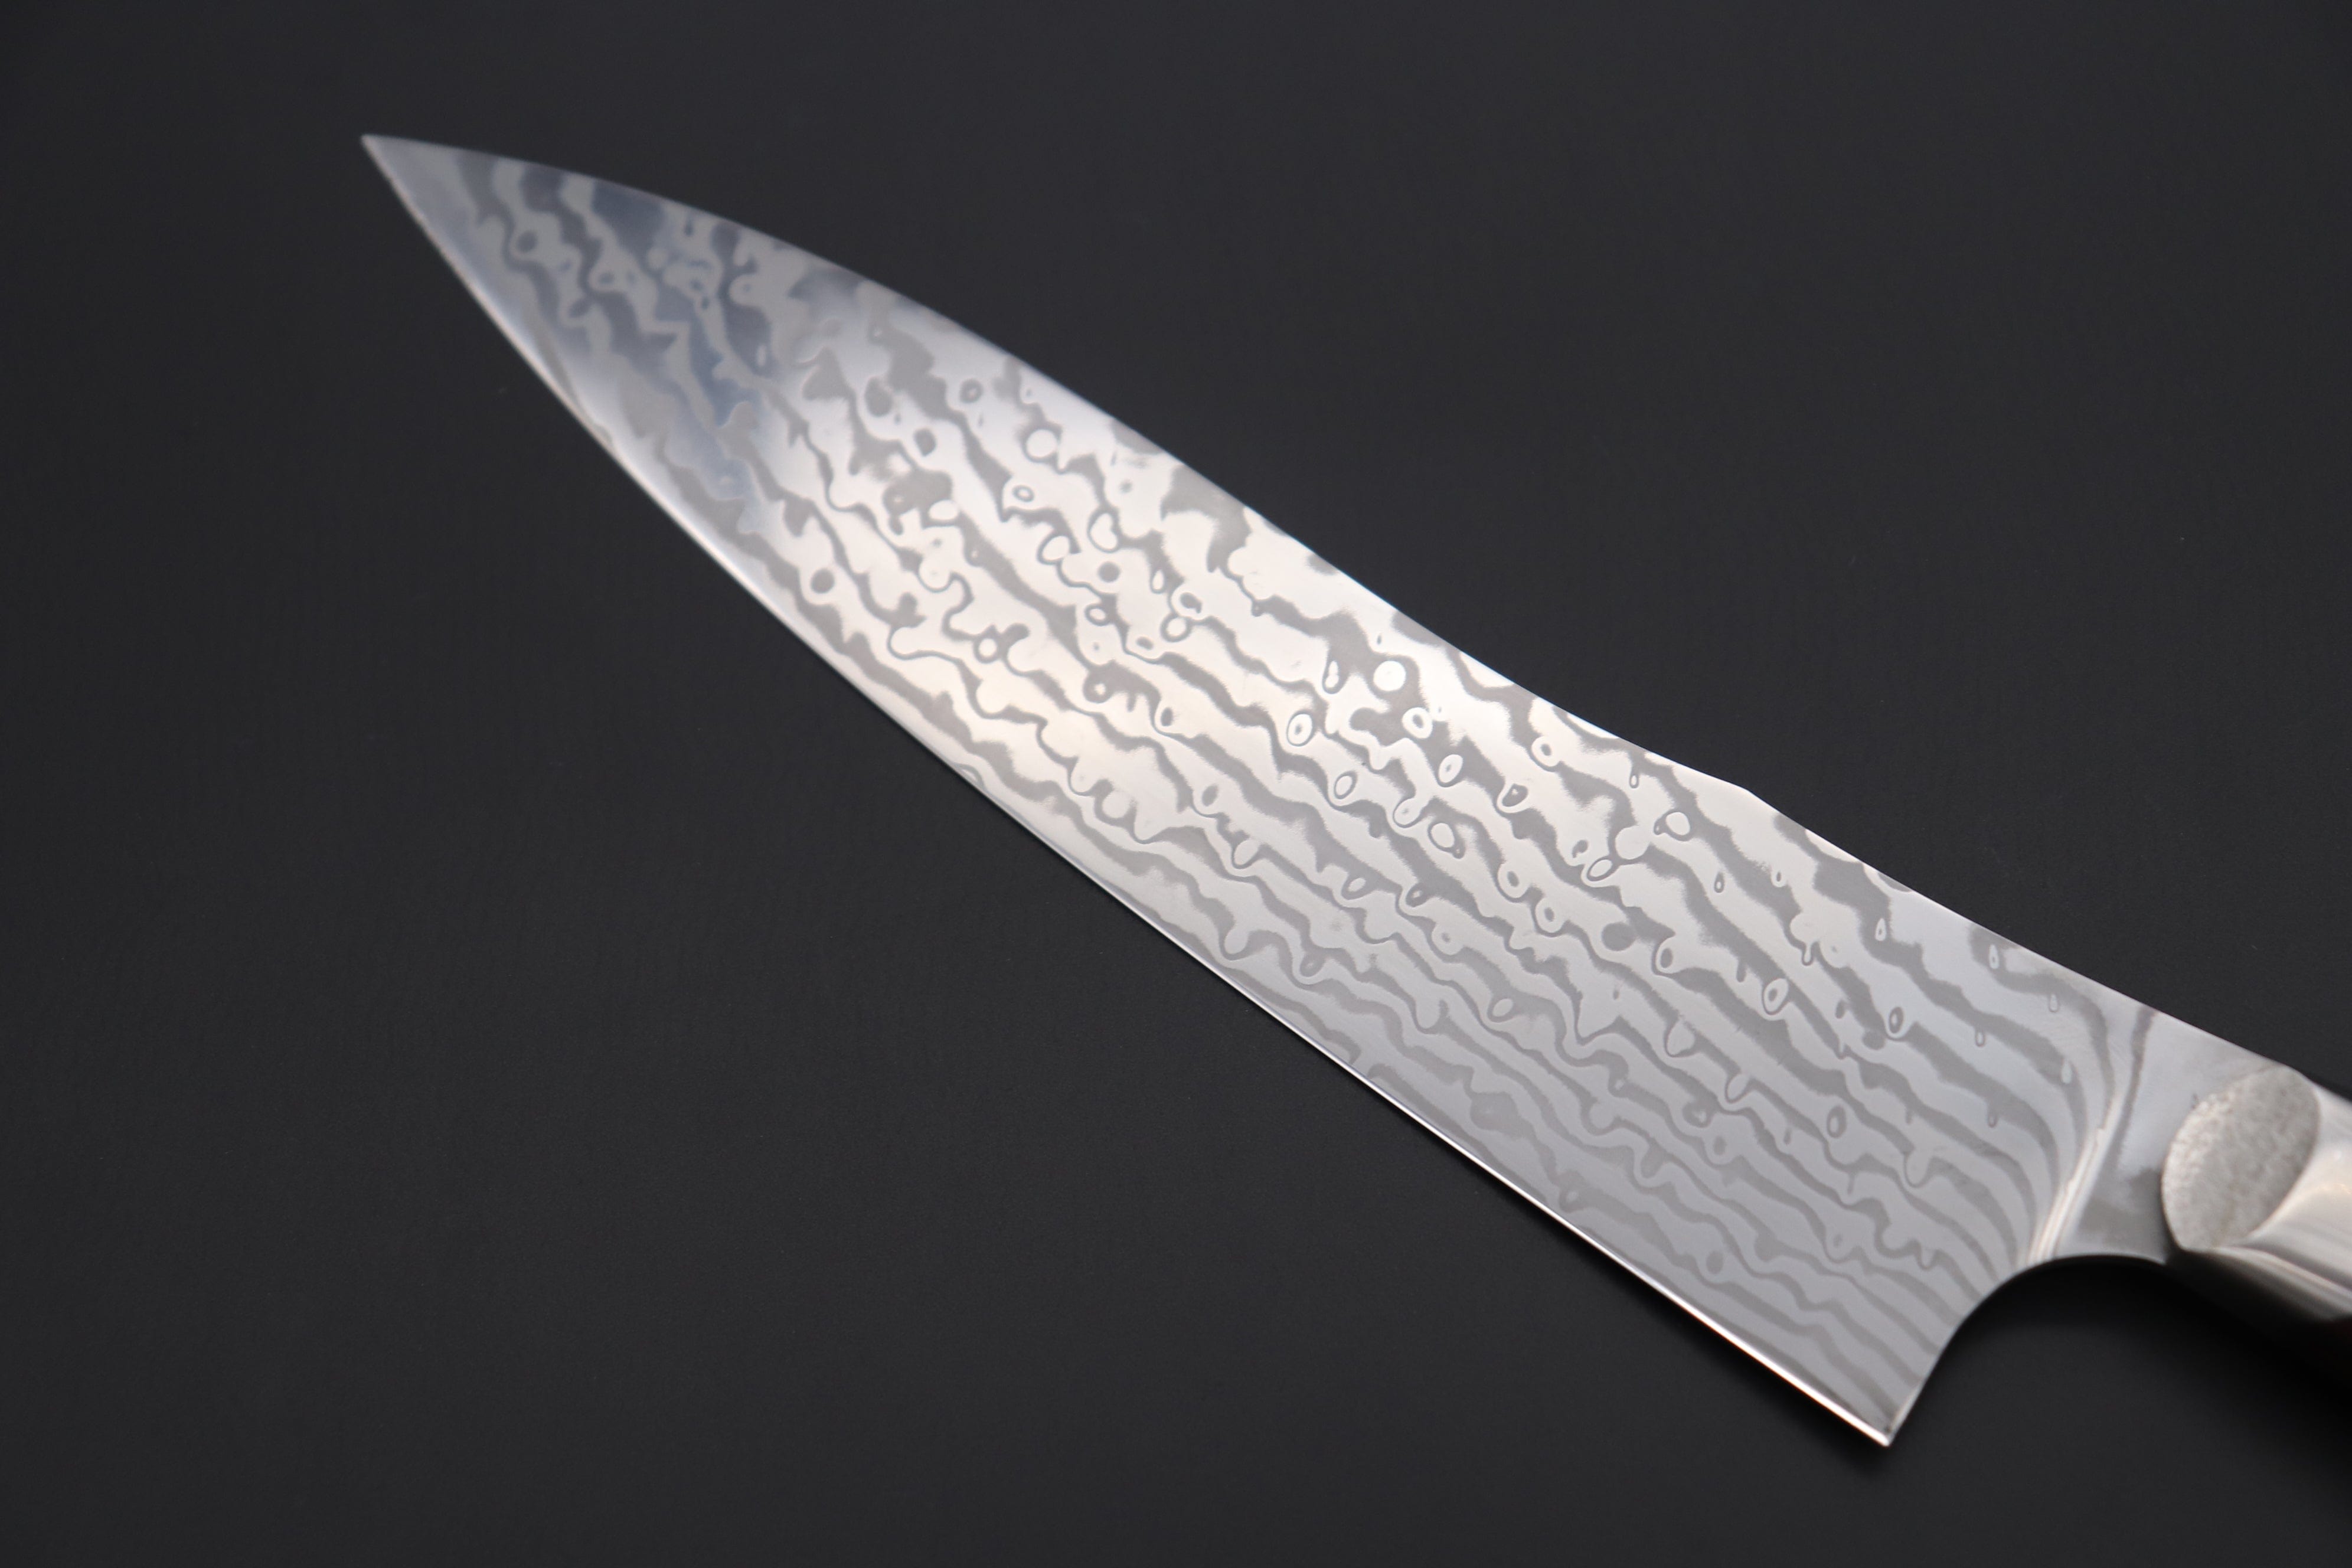 https://japanesechefsknife.com/cdn/shop/files/others-gyuto-custom-knife-maker-saito-hiroshi-custom-core-less-damascus-gyuto-190mm-7-4-inch-desert-ironwood-handle-sh-6-43309846790427.jpg?v=1698296439